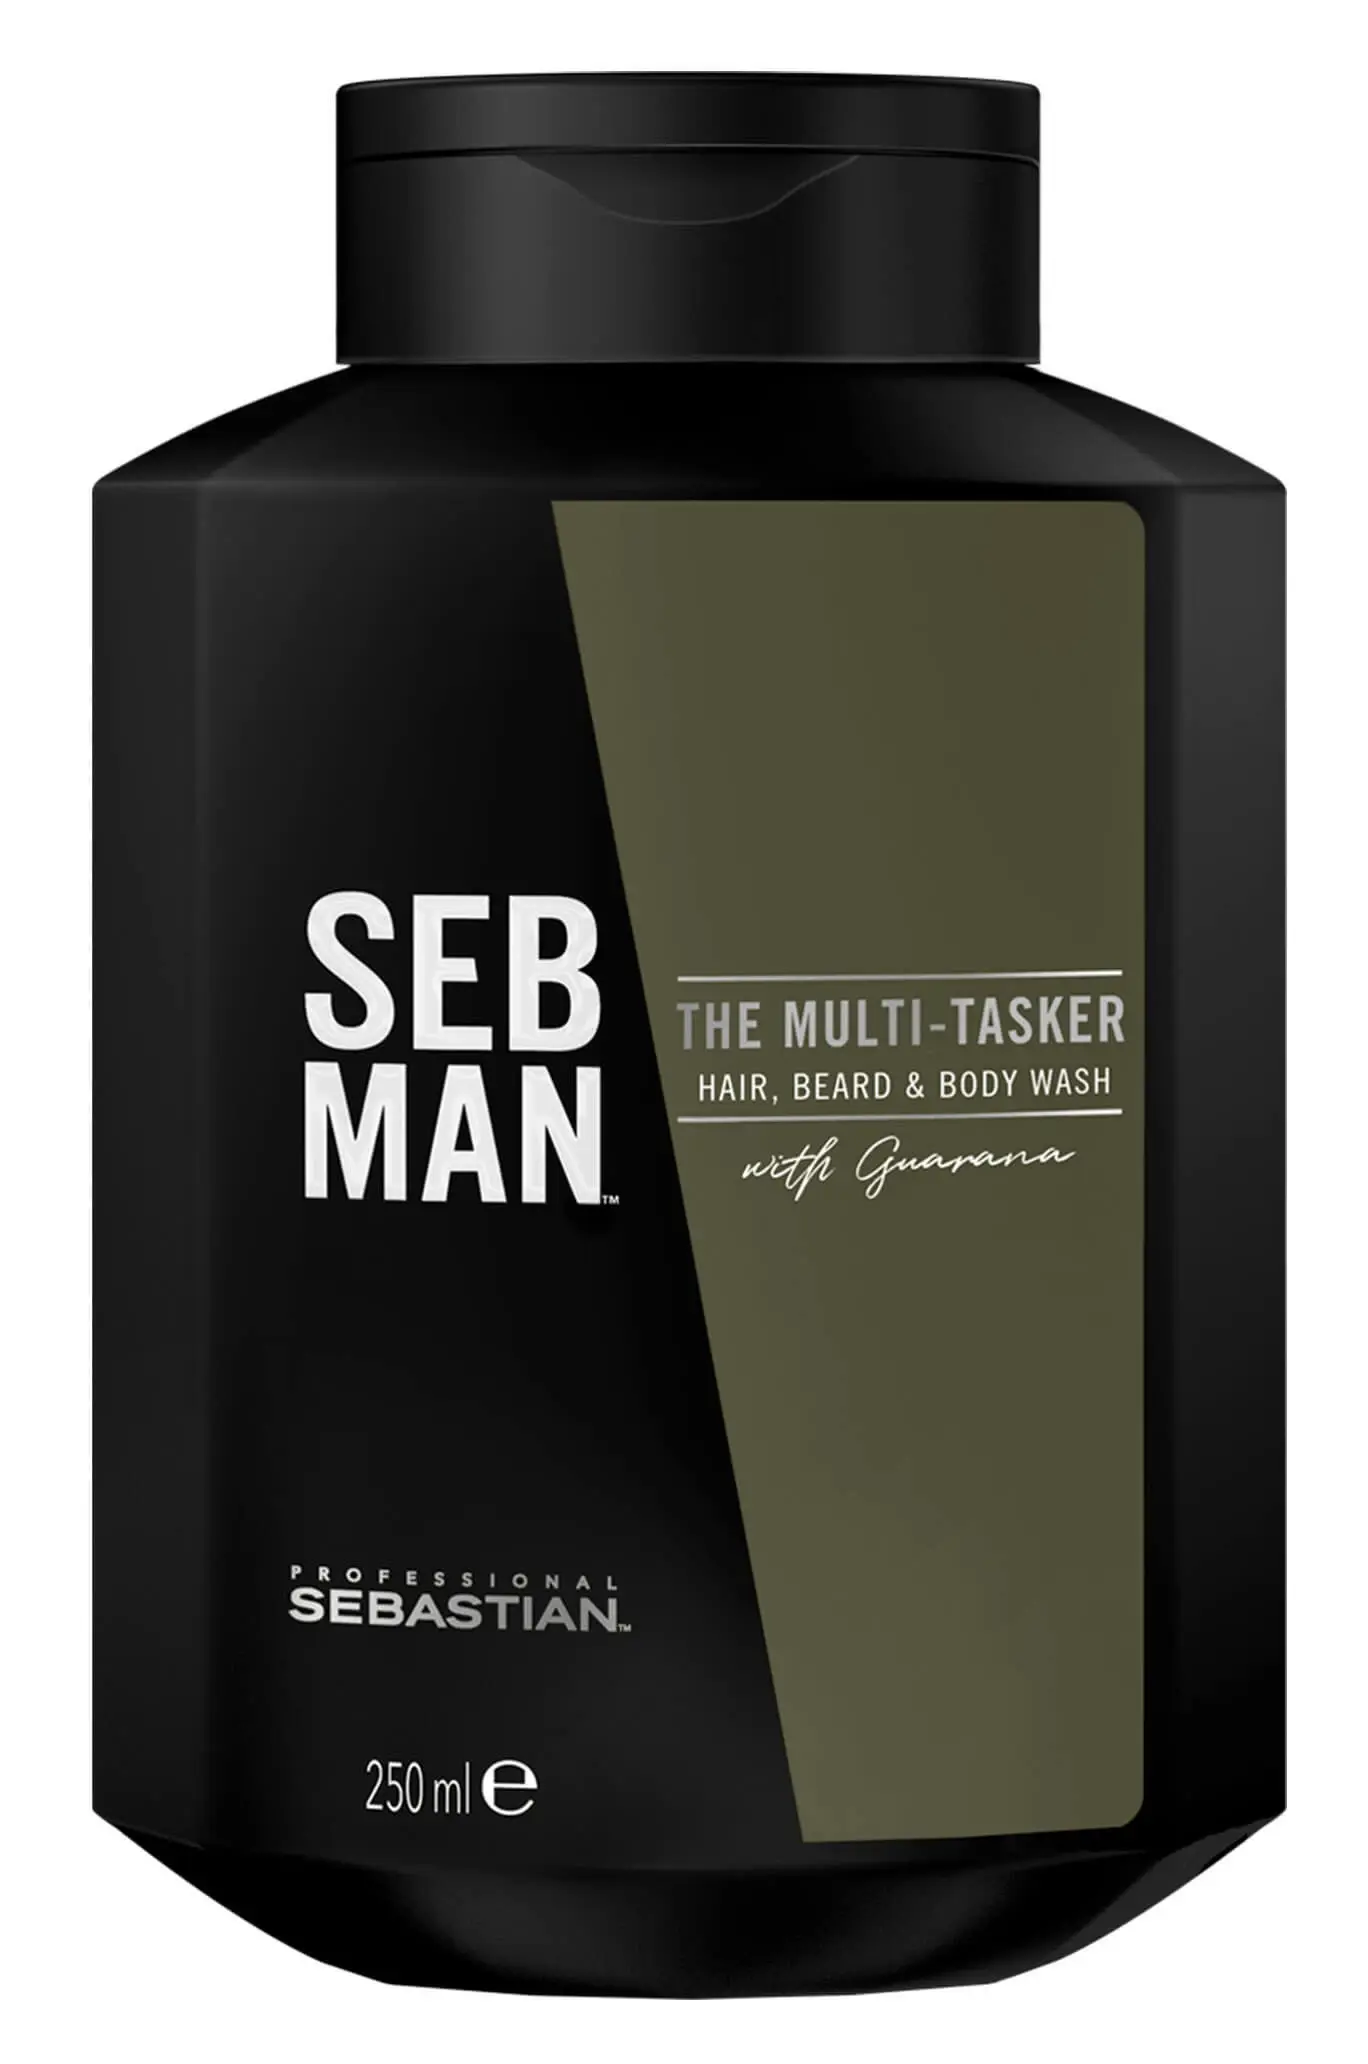 Seb Man - The Multitasker 250ml